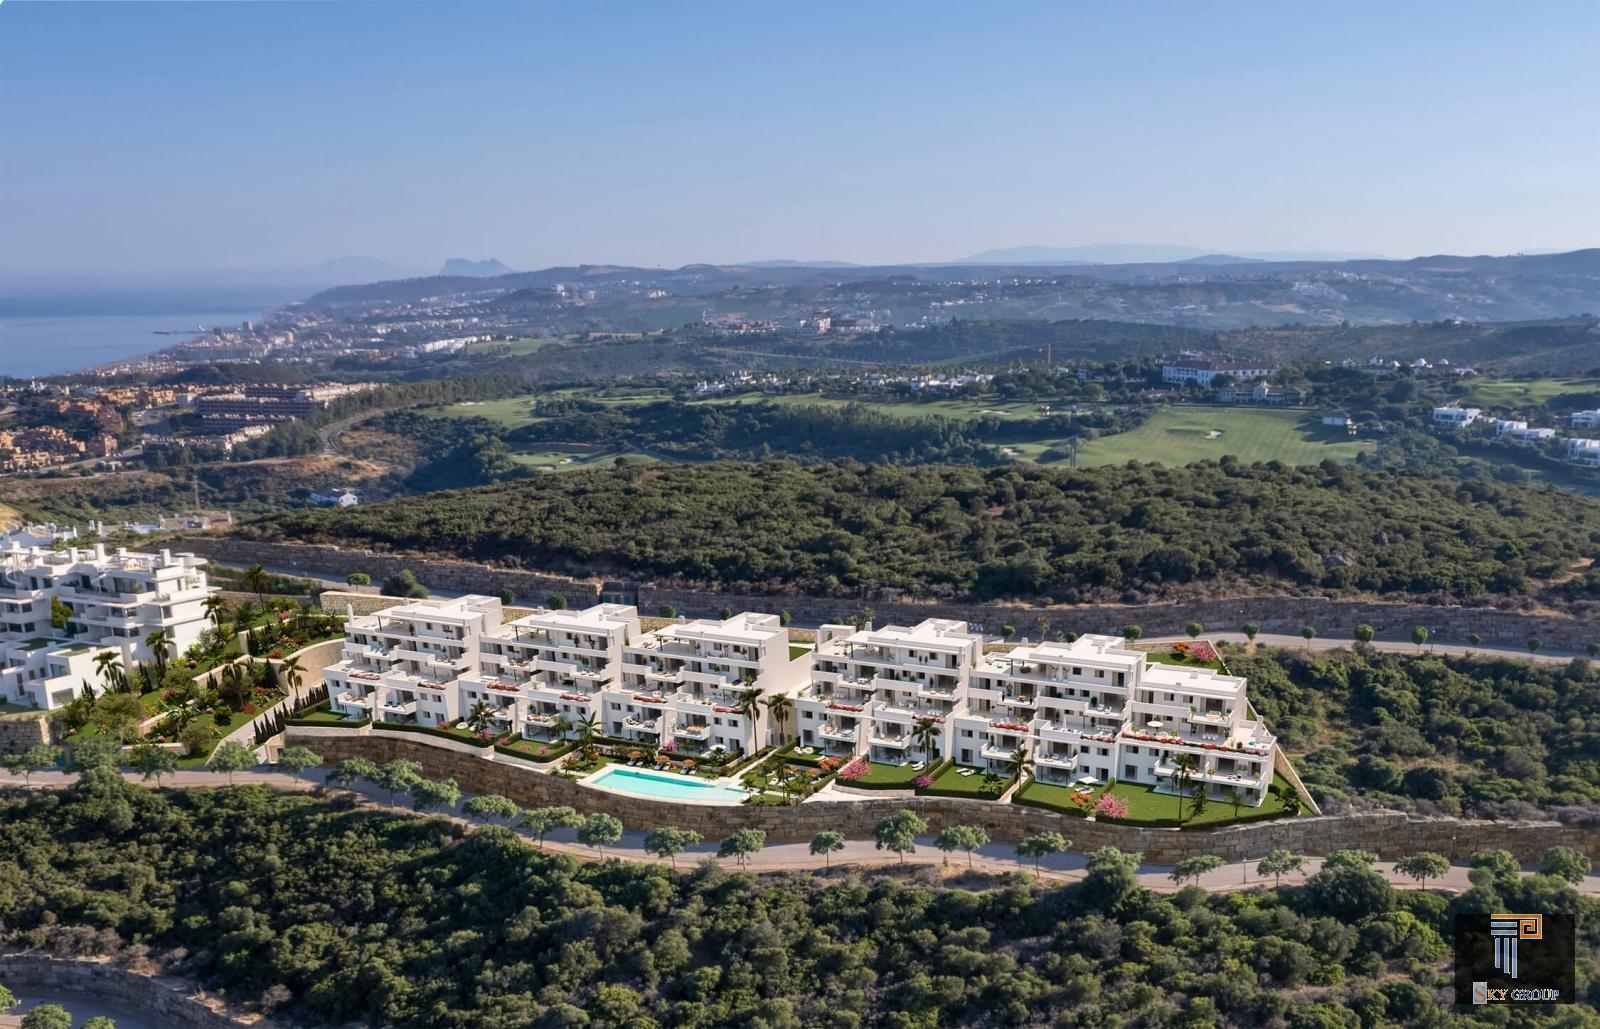 Luxury Apartment for sale in Casares Costa (Casares), 512.000 €